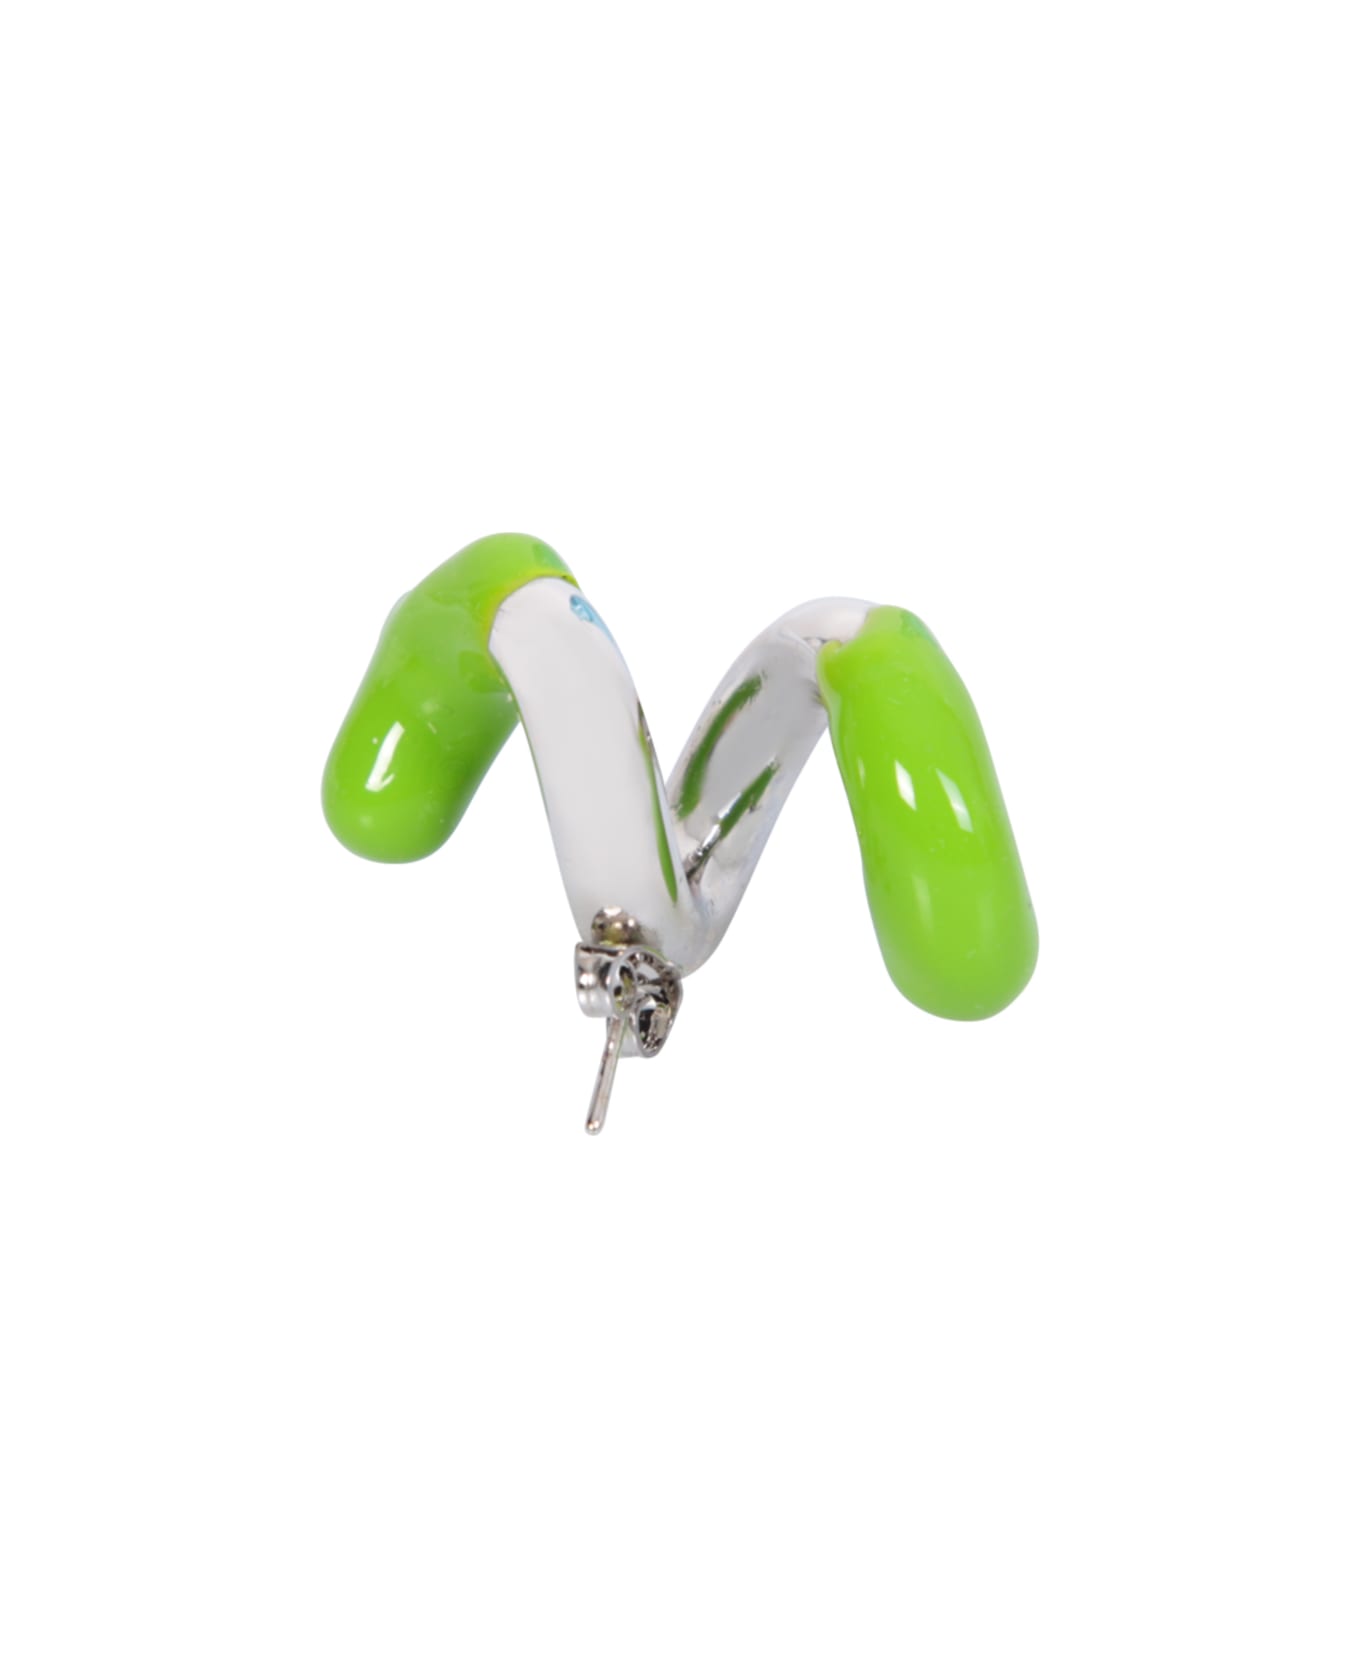 Sunnei Fusillo Rubberized Silver/ Green Earrings - Metallic